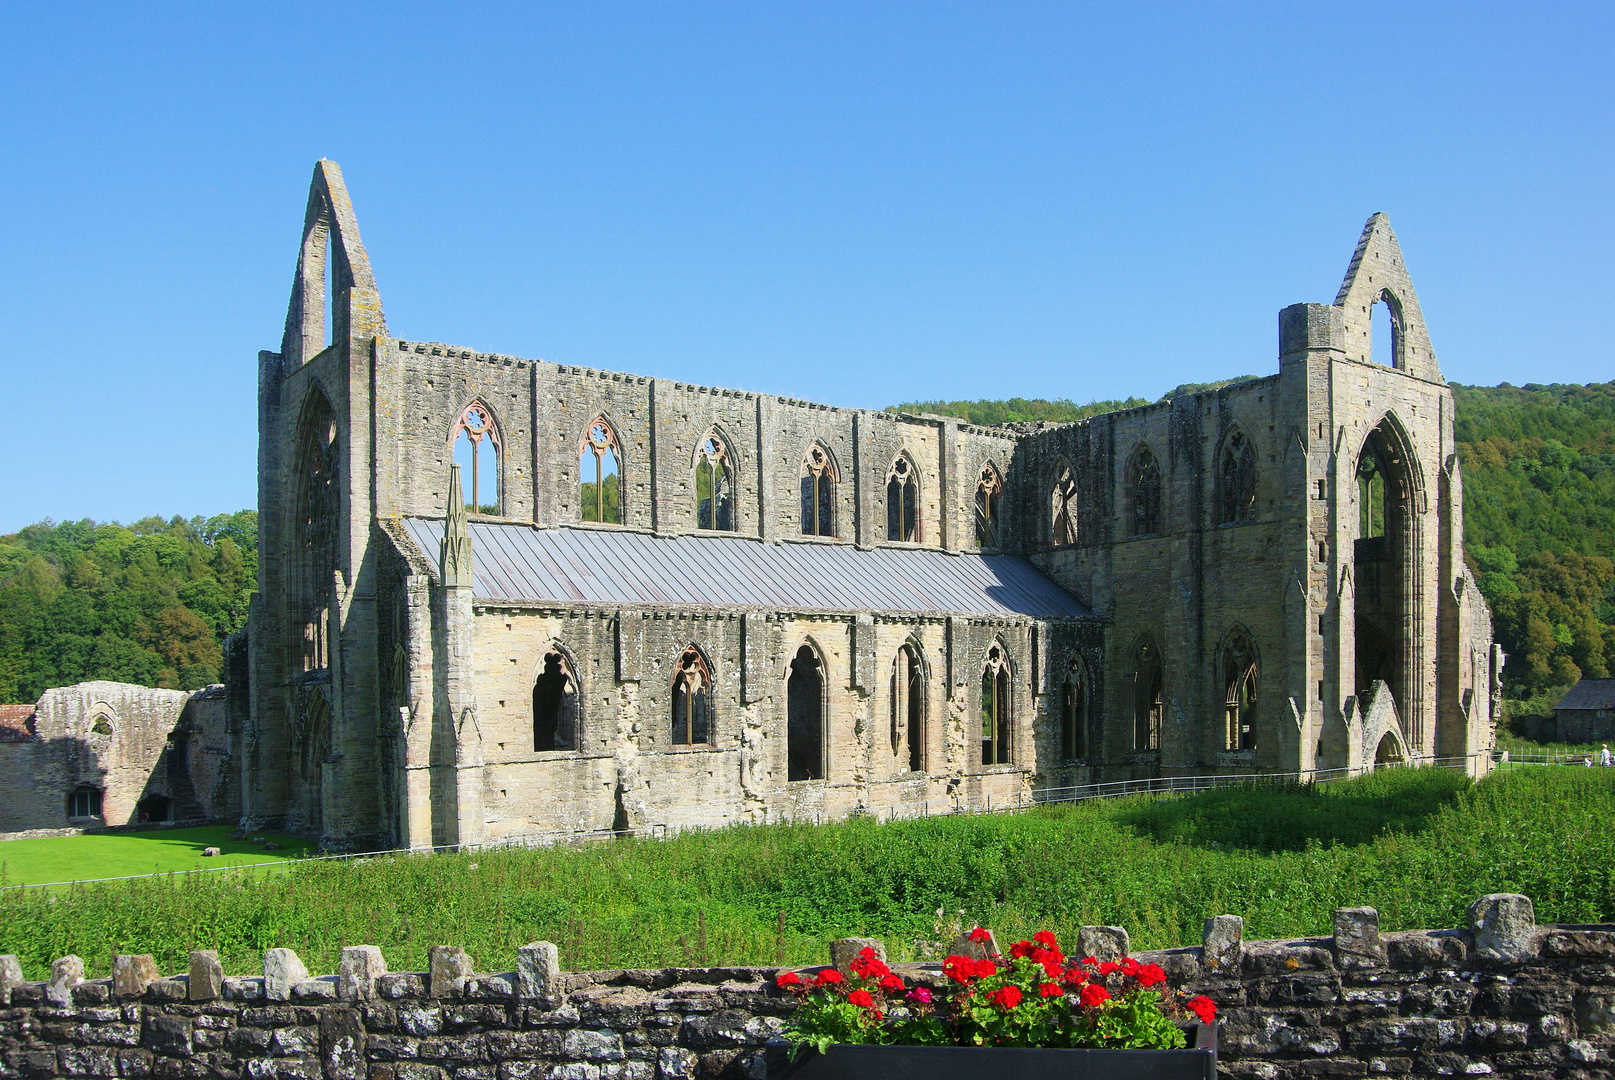 Tintern-Abbey in Wales